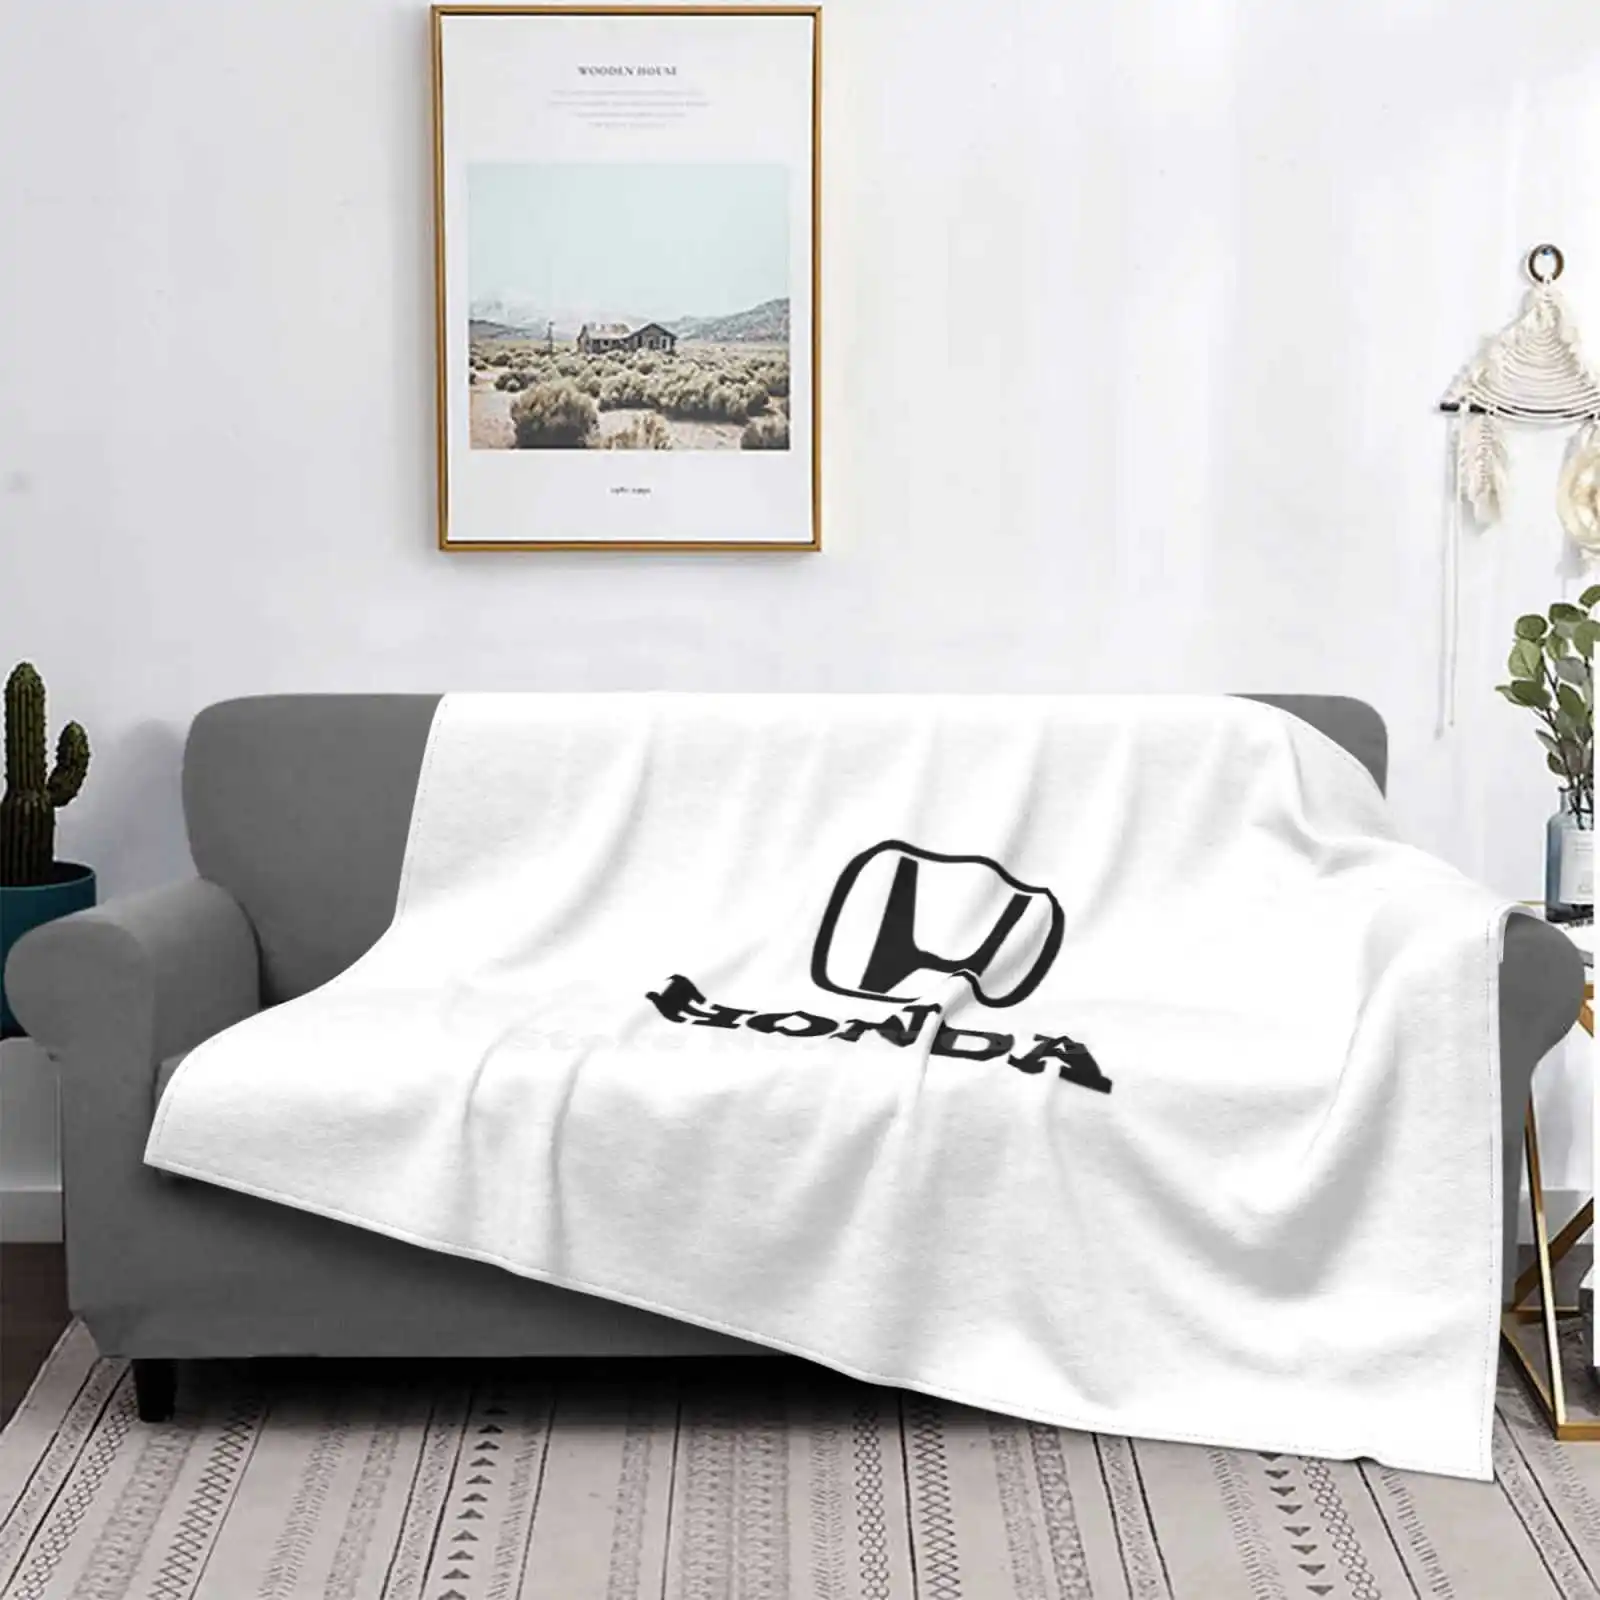 

Автомобильное одеяло, мягкое теплое дорожное портативное одеяло Holden Car Company